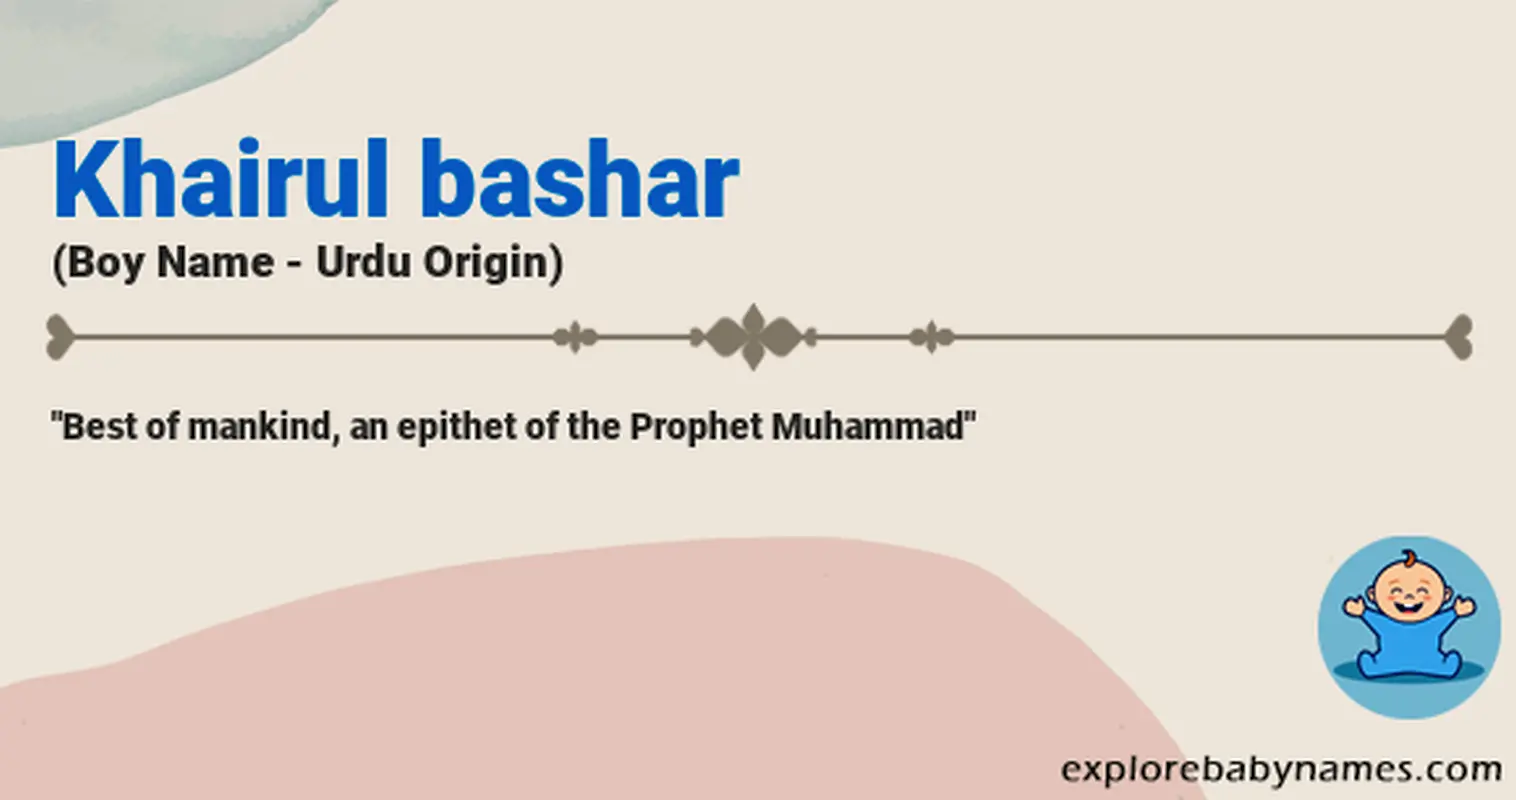 Meaning of Khairul bashar